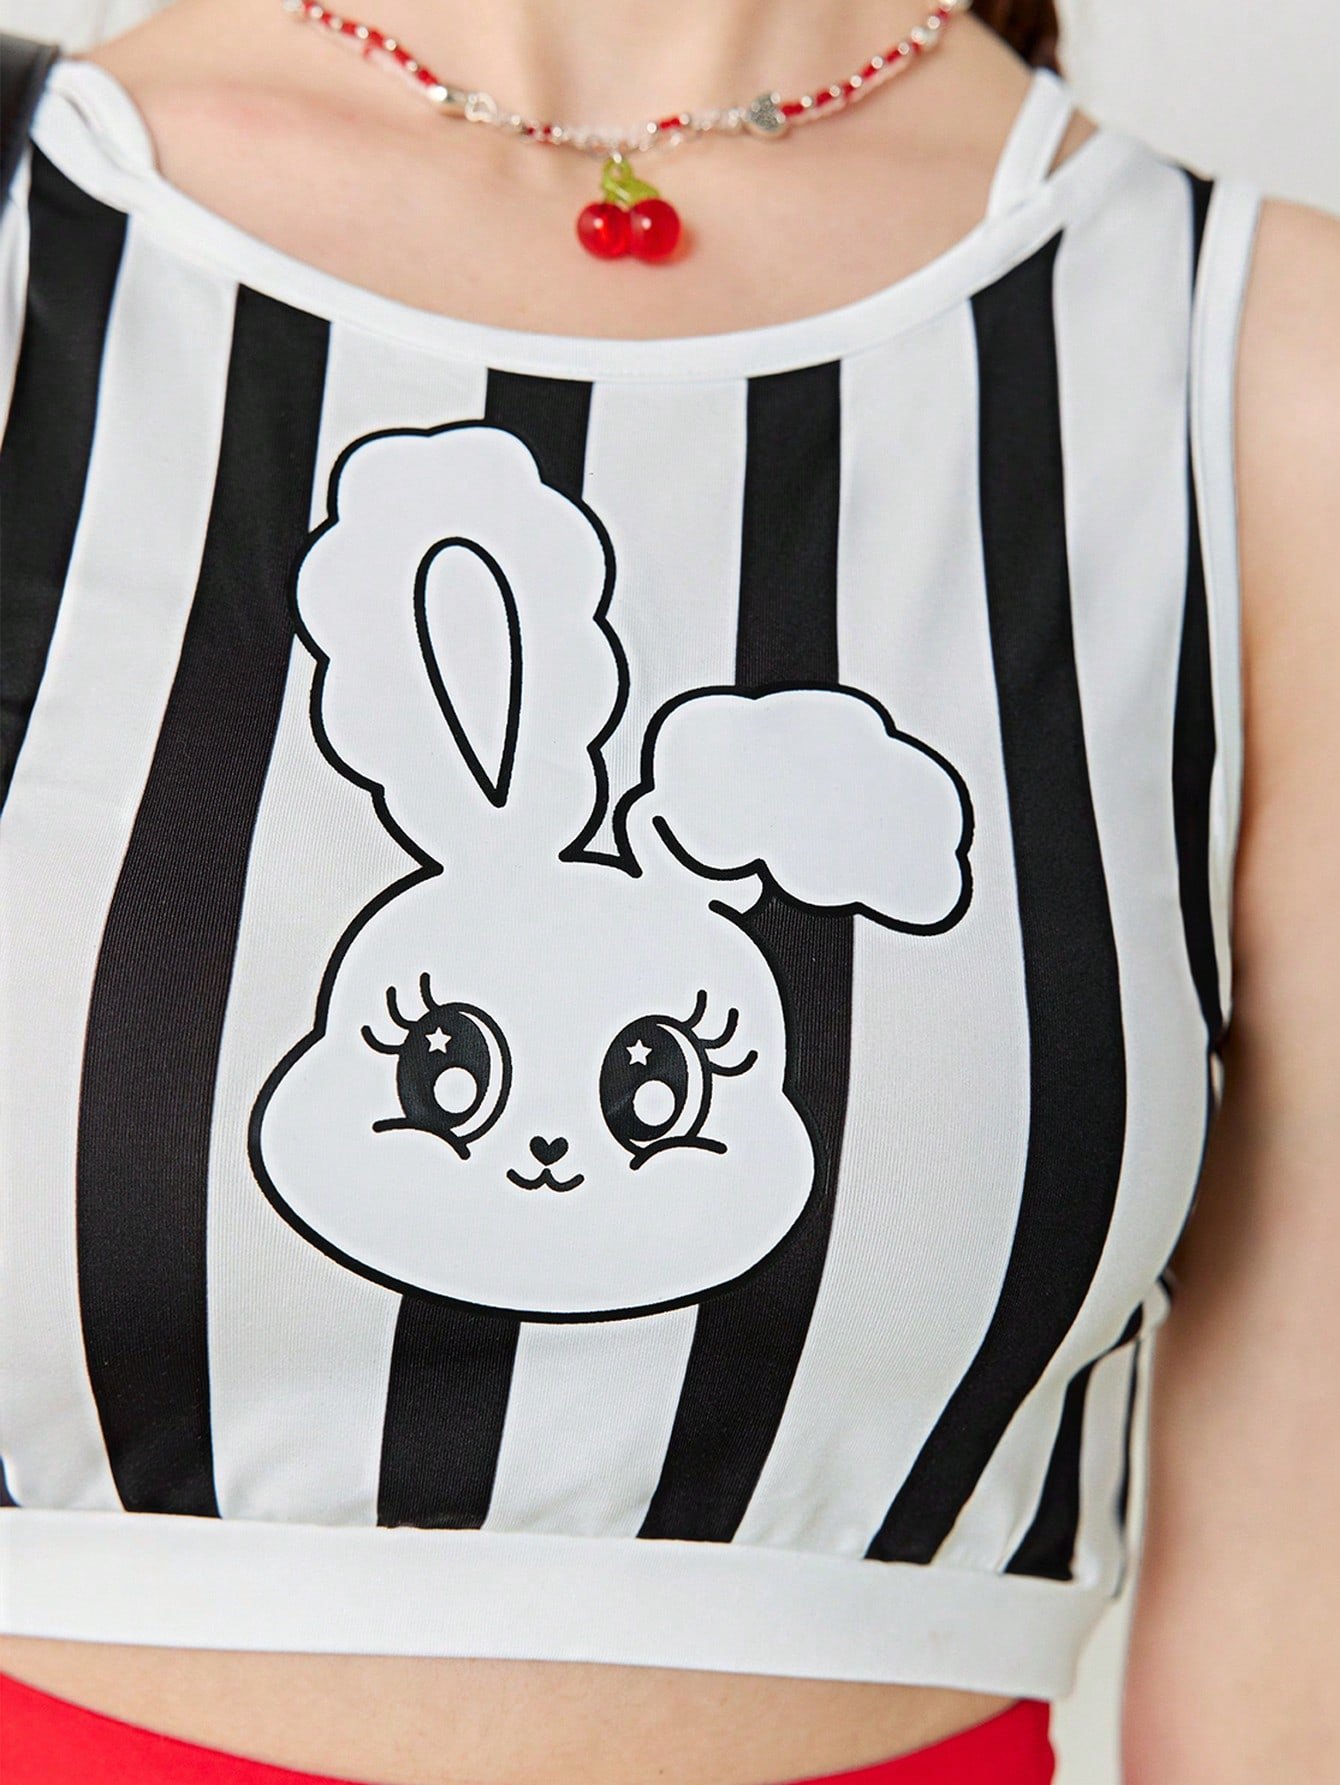 女性の夏用カジュアルなウサギのカートゥーンストライププリントブラックアンドホワイトの短いニットタンクトップ。